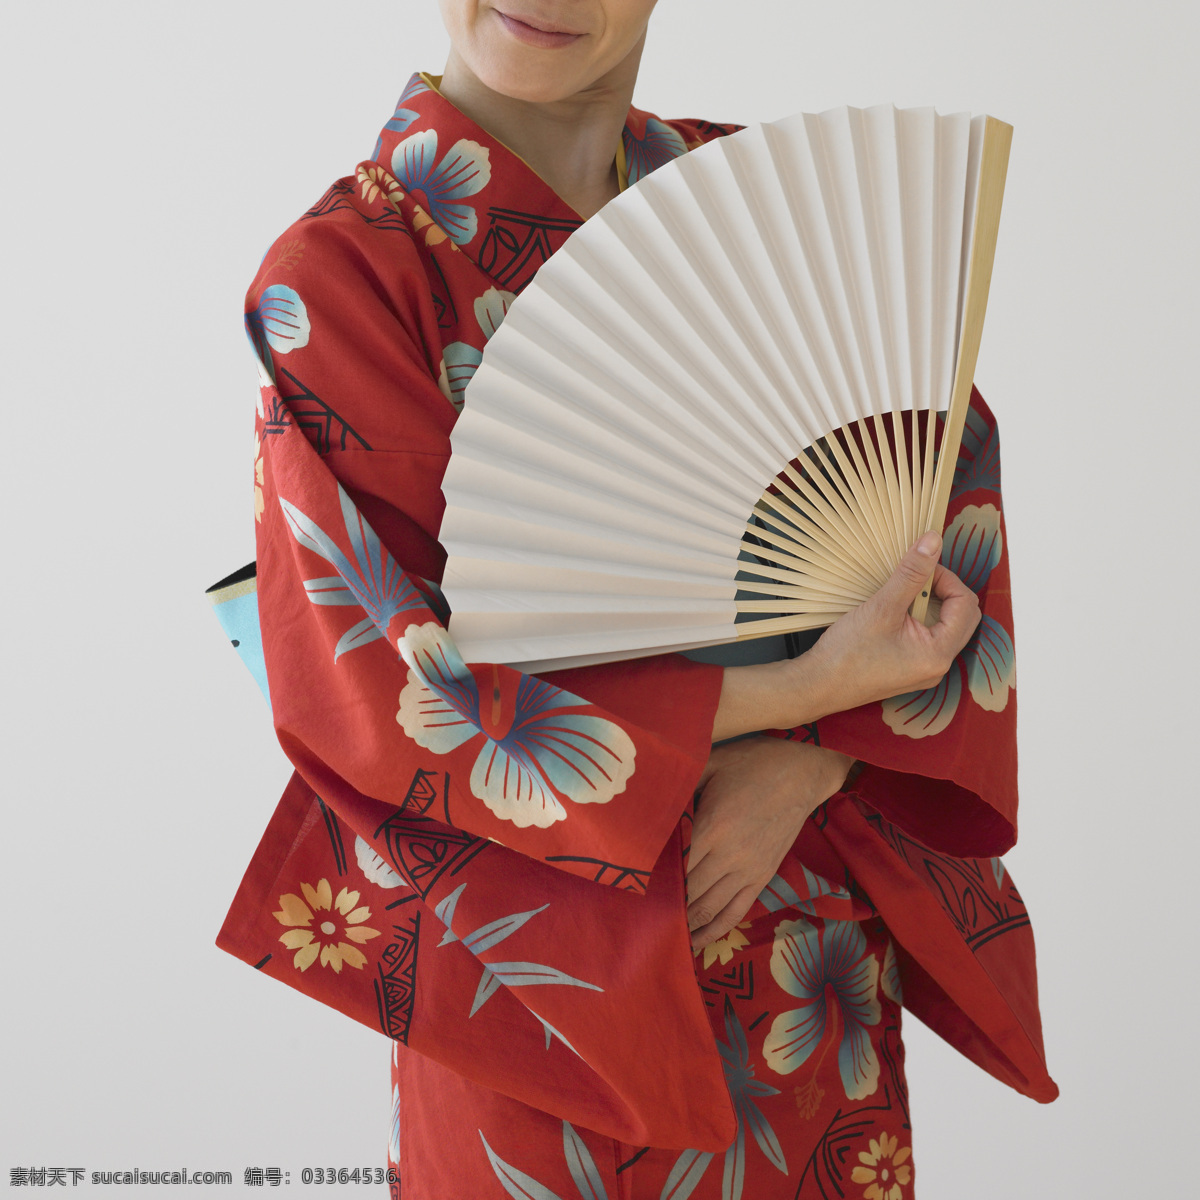 穿着 和服 女人 女性 日本女性 传统服饰 名族服饰 折扇 空白折扇 微笑 美女图片 人物图片